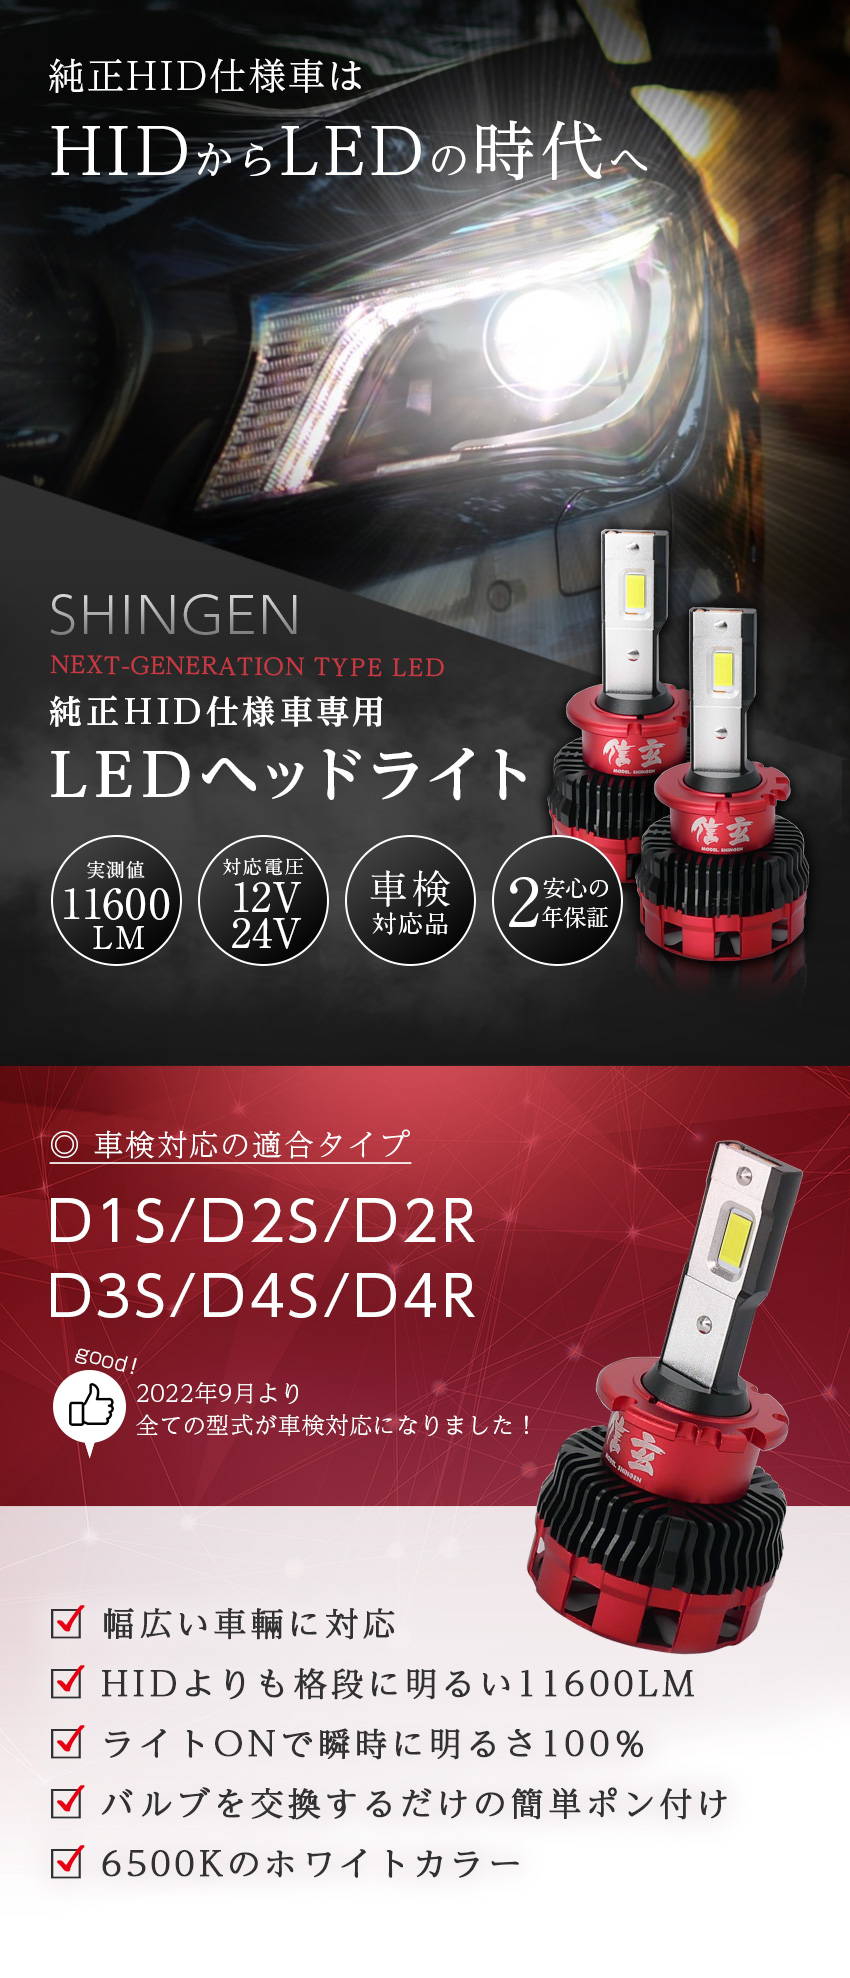 HIDより明るい○ D2S LED ヘッドライト MPV 爆光 | elchate.com